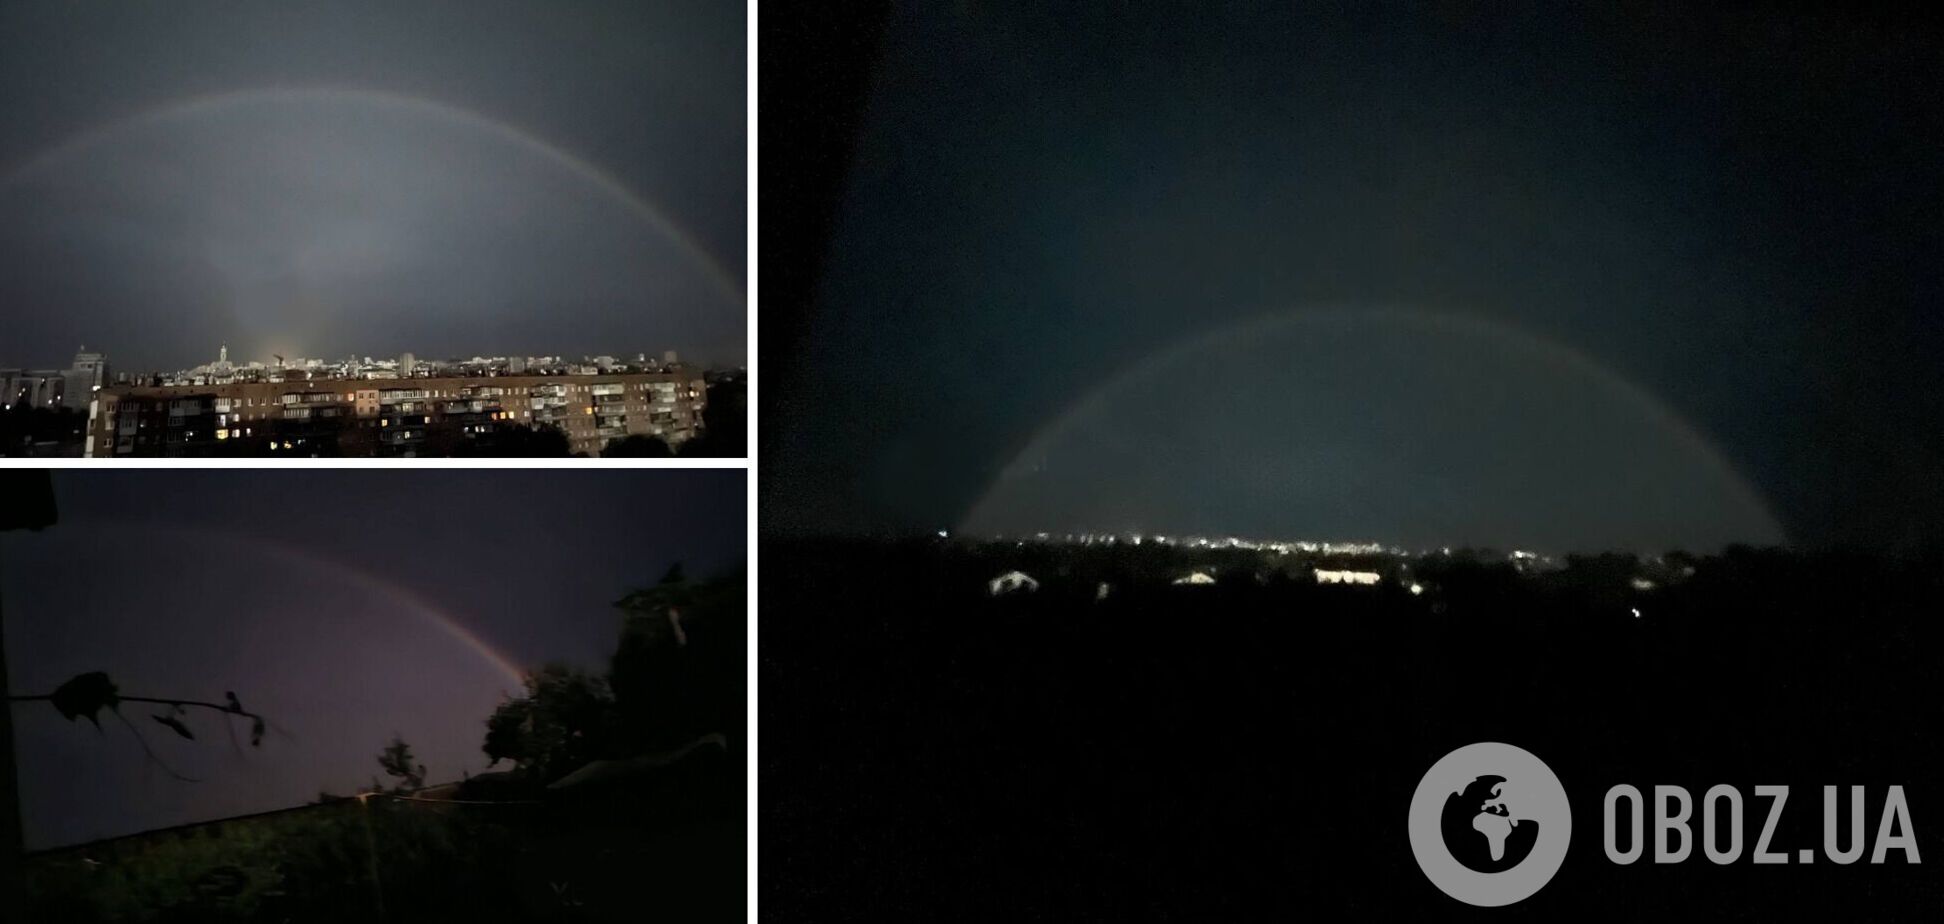 Как защитный купол: в ночном небе над Харьковом заметили радугу. Фото